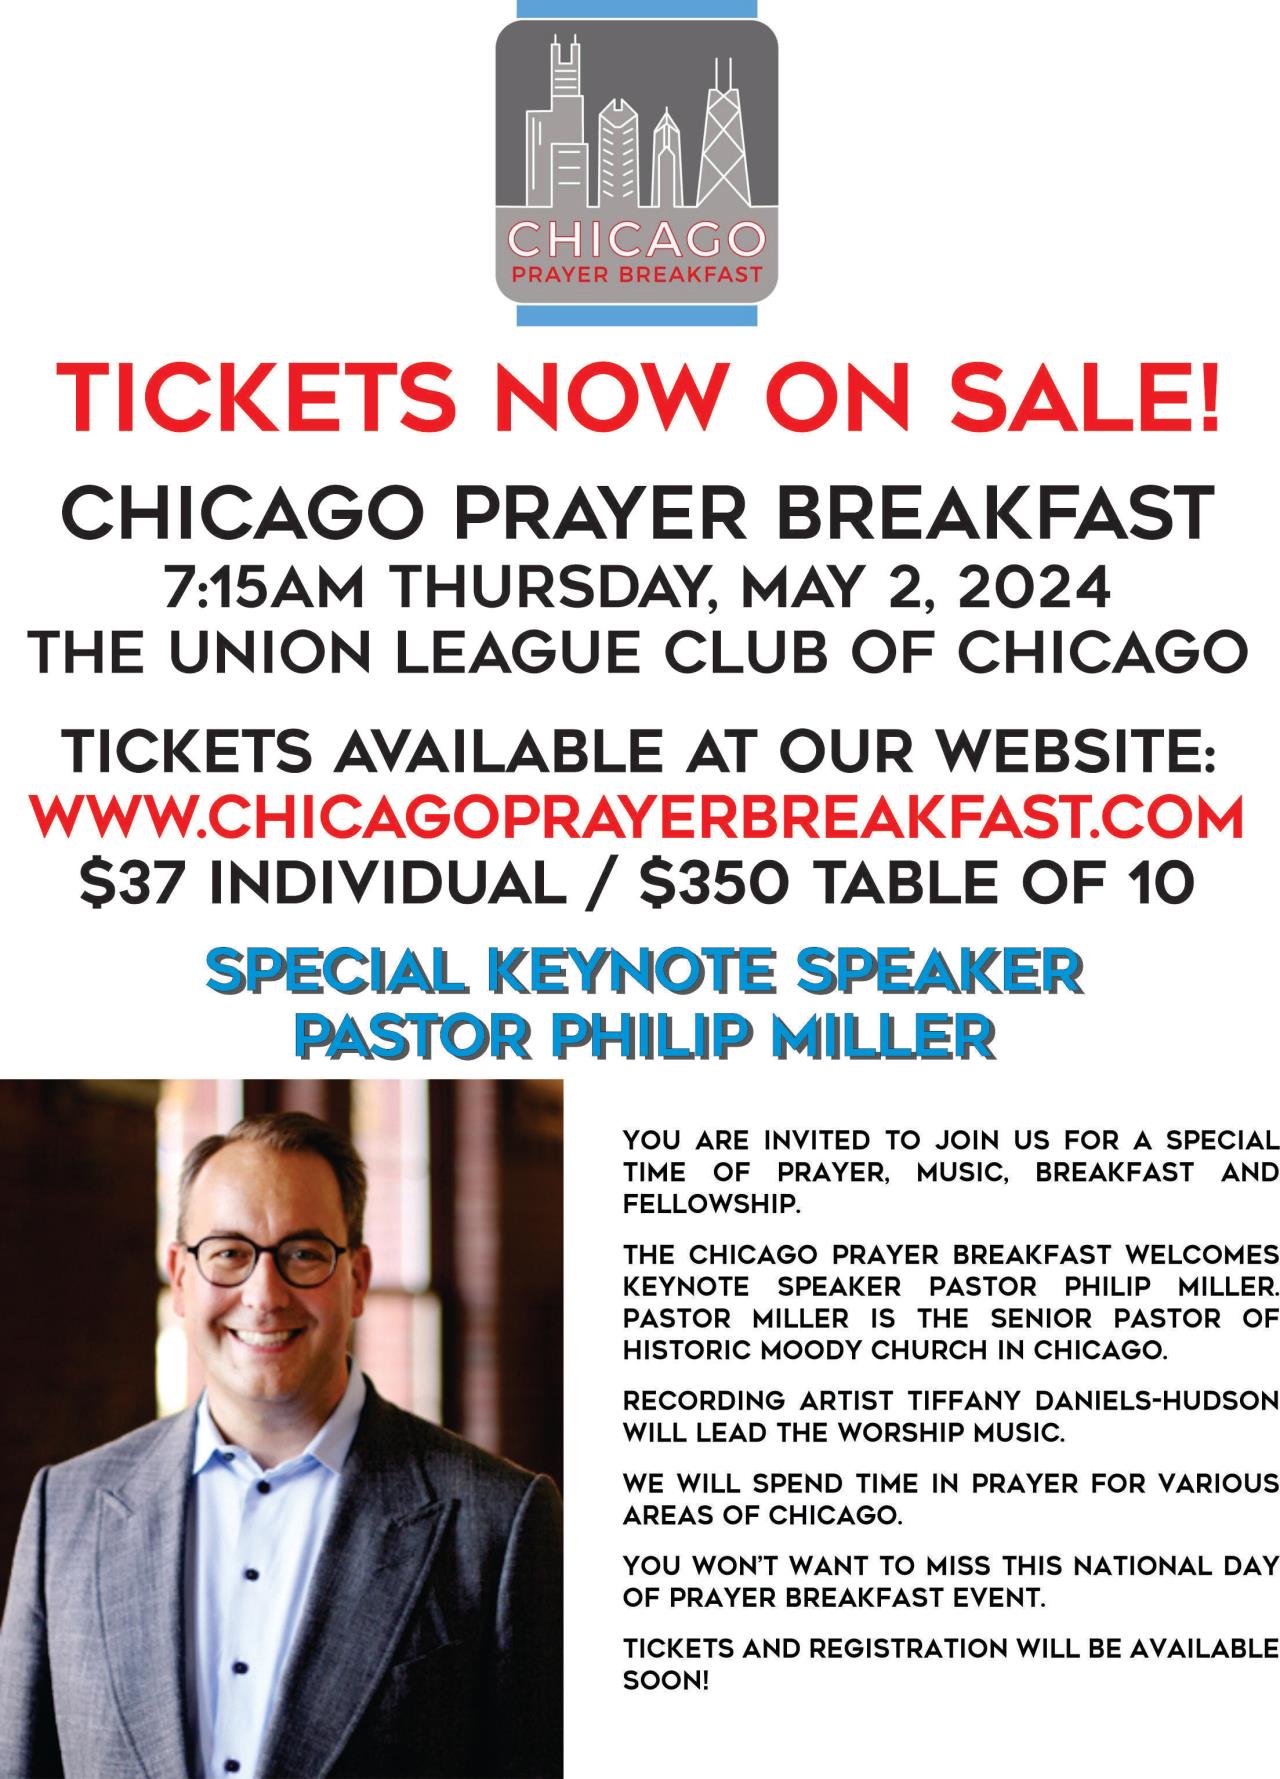 Chicago Prayer Breakfast: Continuing Steadfast in Prayer!